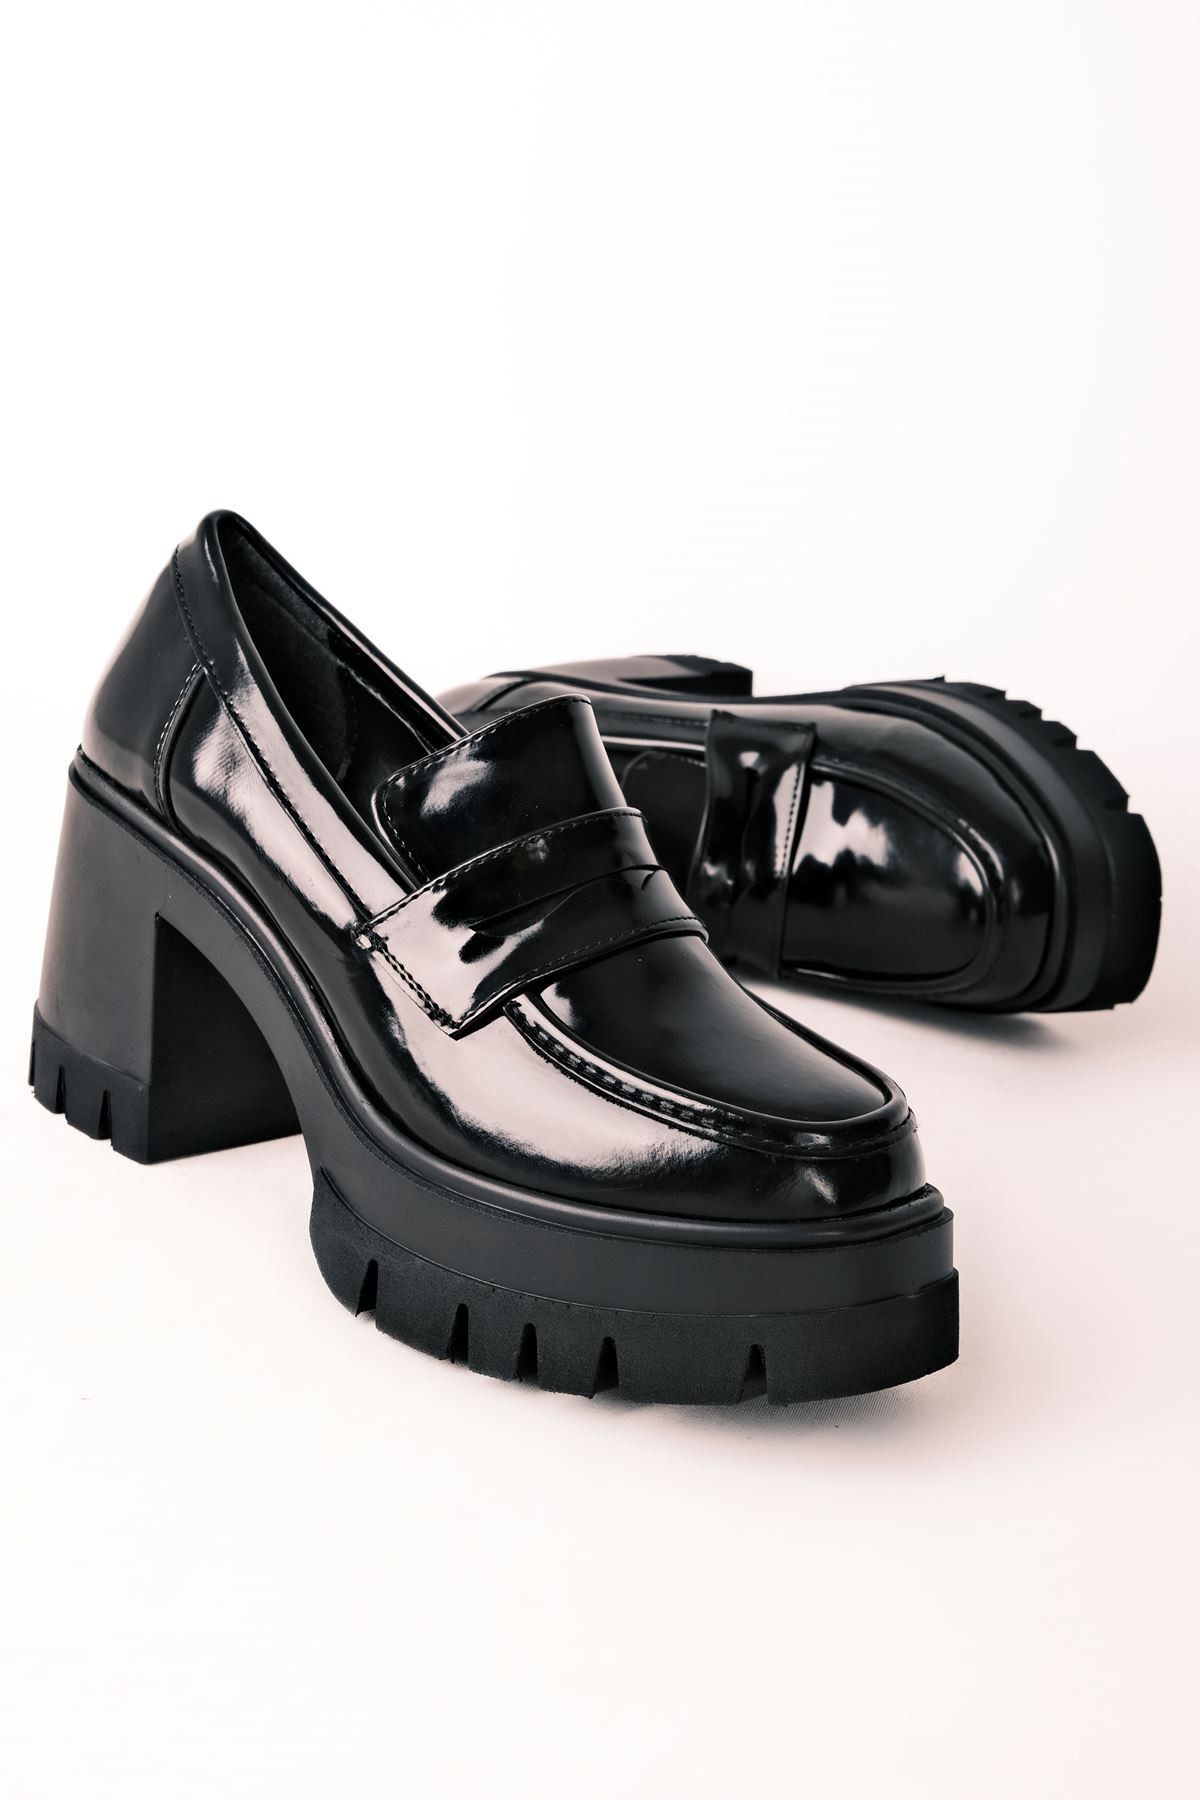 Alive Kadın Kalın Topuklu Oxford Ayakkabı